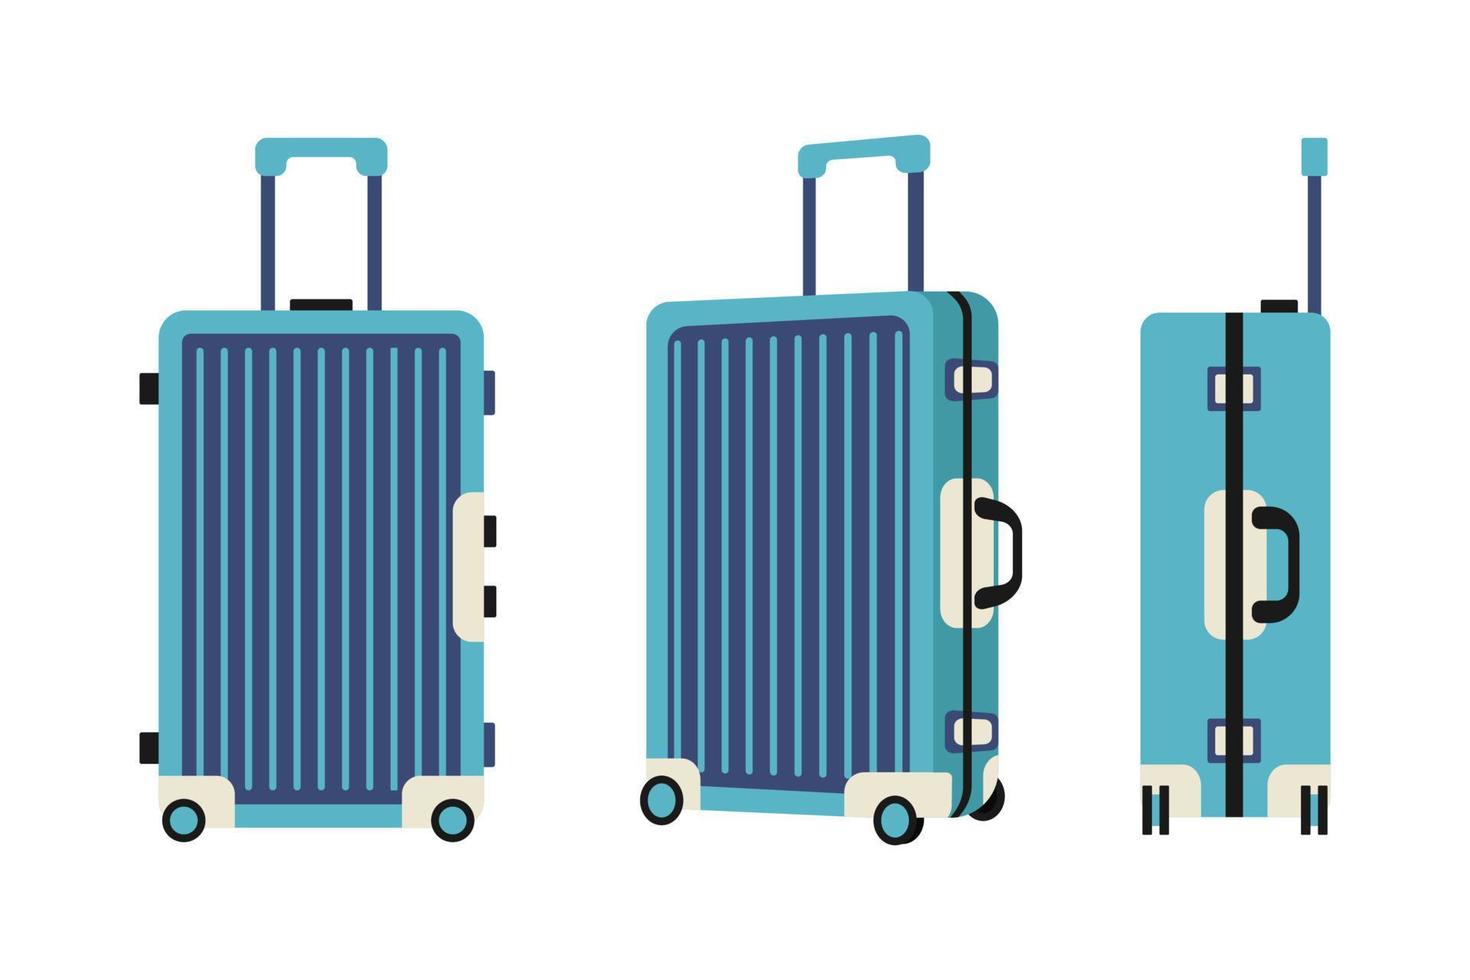 vectorillustratie van een blauwe plastic reiskoffer in voor- en zijaanzicht. reizen vakanties ontwerp afbeelding, vectorillustratie van een bagage, bagage, koffer op een witte achtergrond. vector